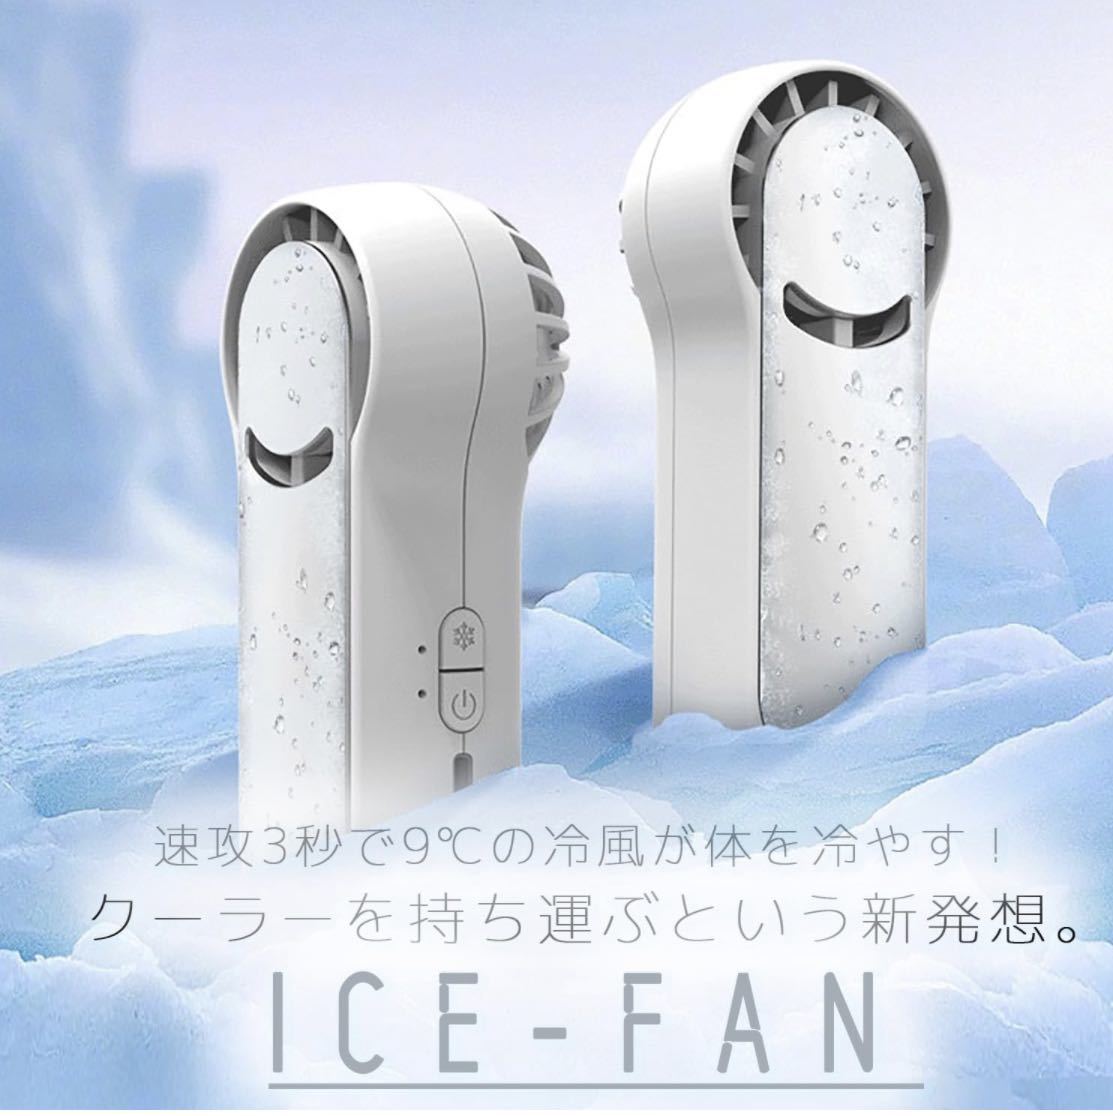  в наличии кондиционер [ICE-FAN] маленький размер вентилятор маленький размер кондиционер I sling вентилятор кондиционер охлаждающий в наличии вентилятор новейшая модель 